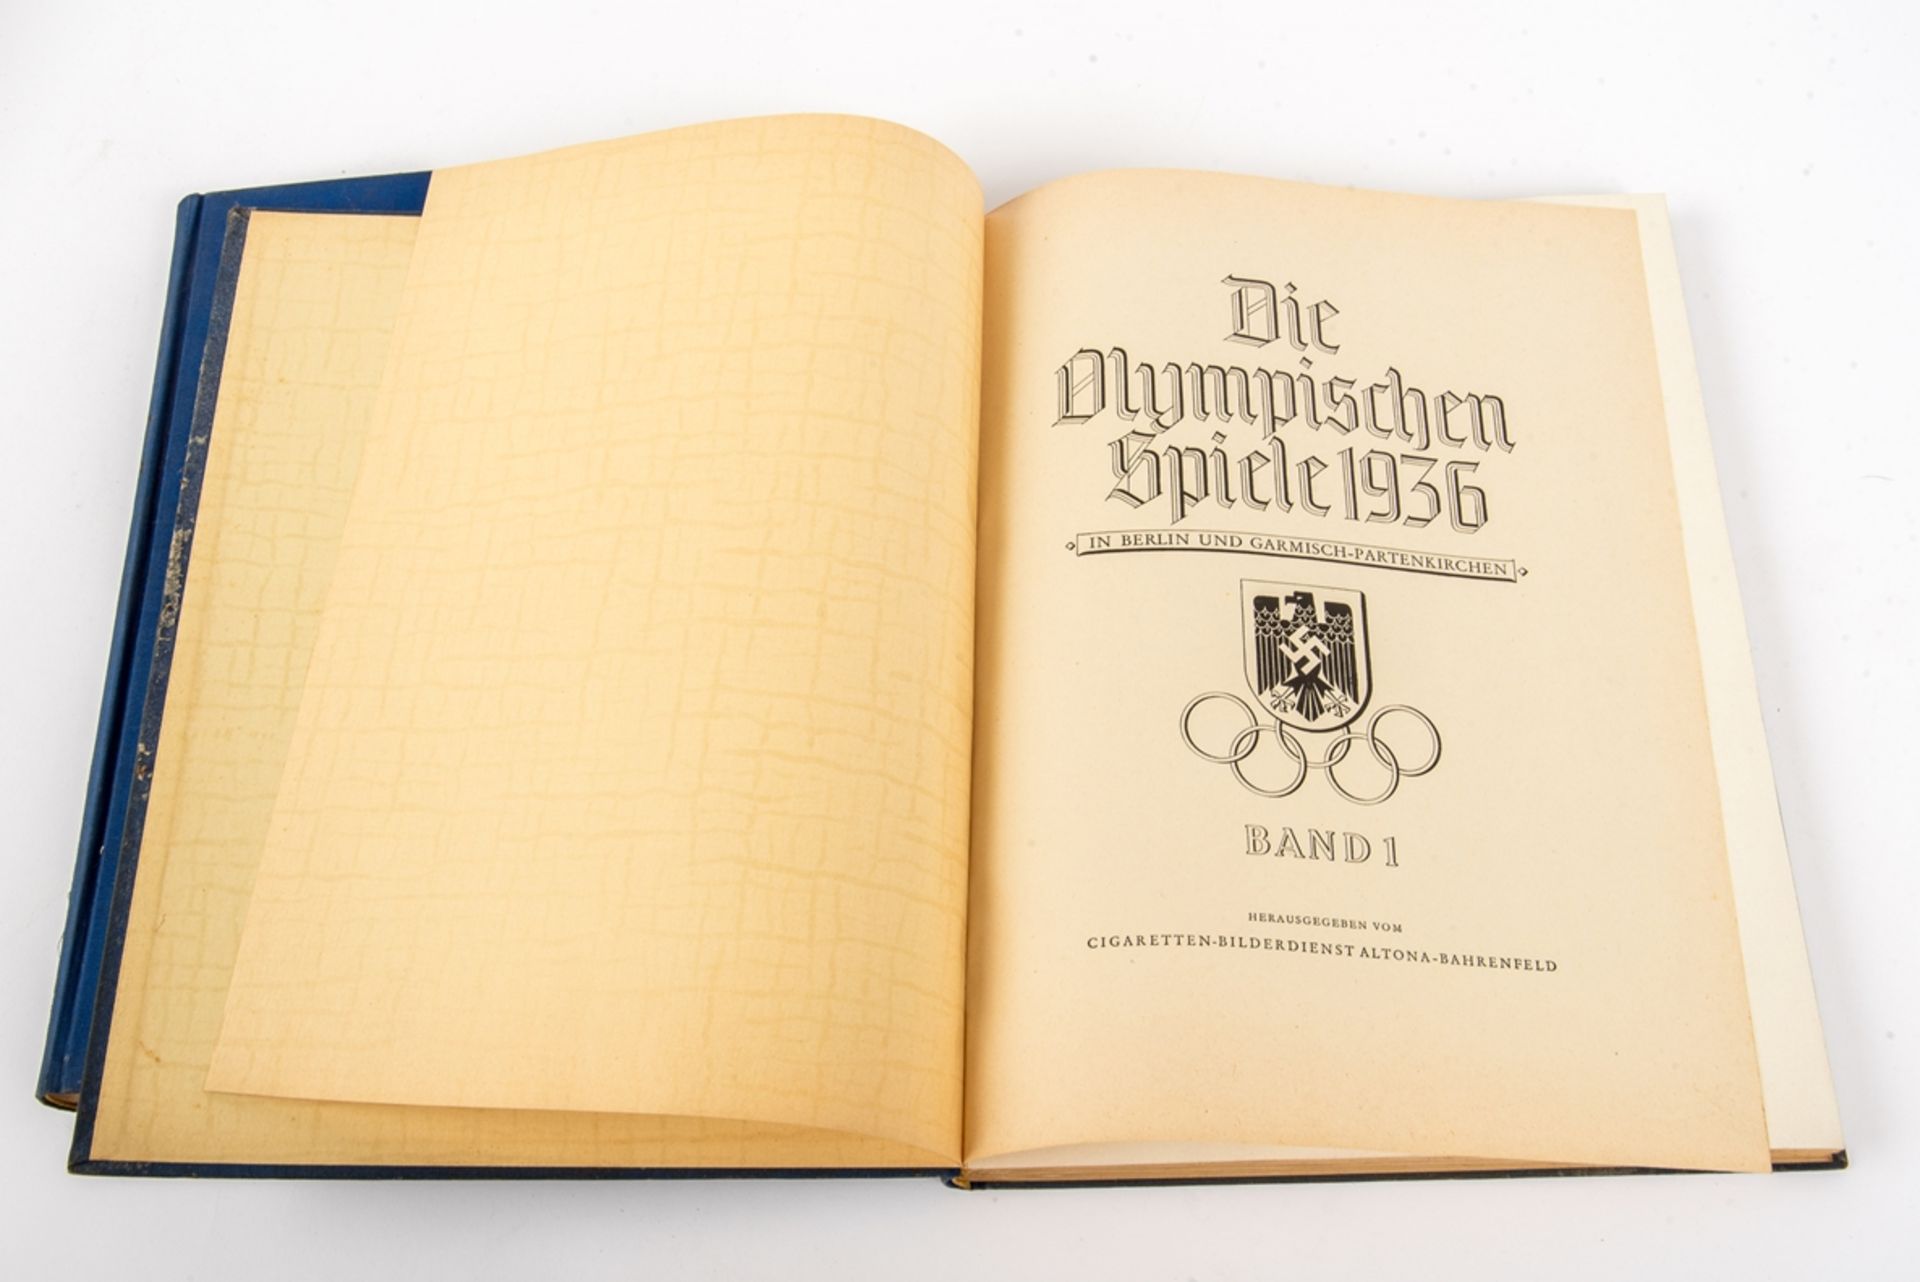 Die Olympischen Winterspiele 1936 - Image 2 of 4